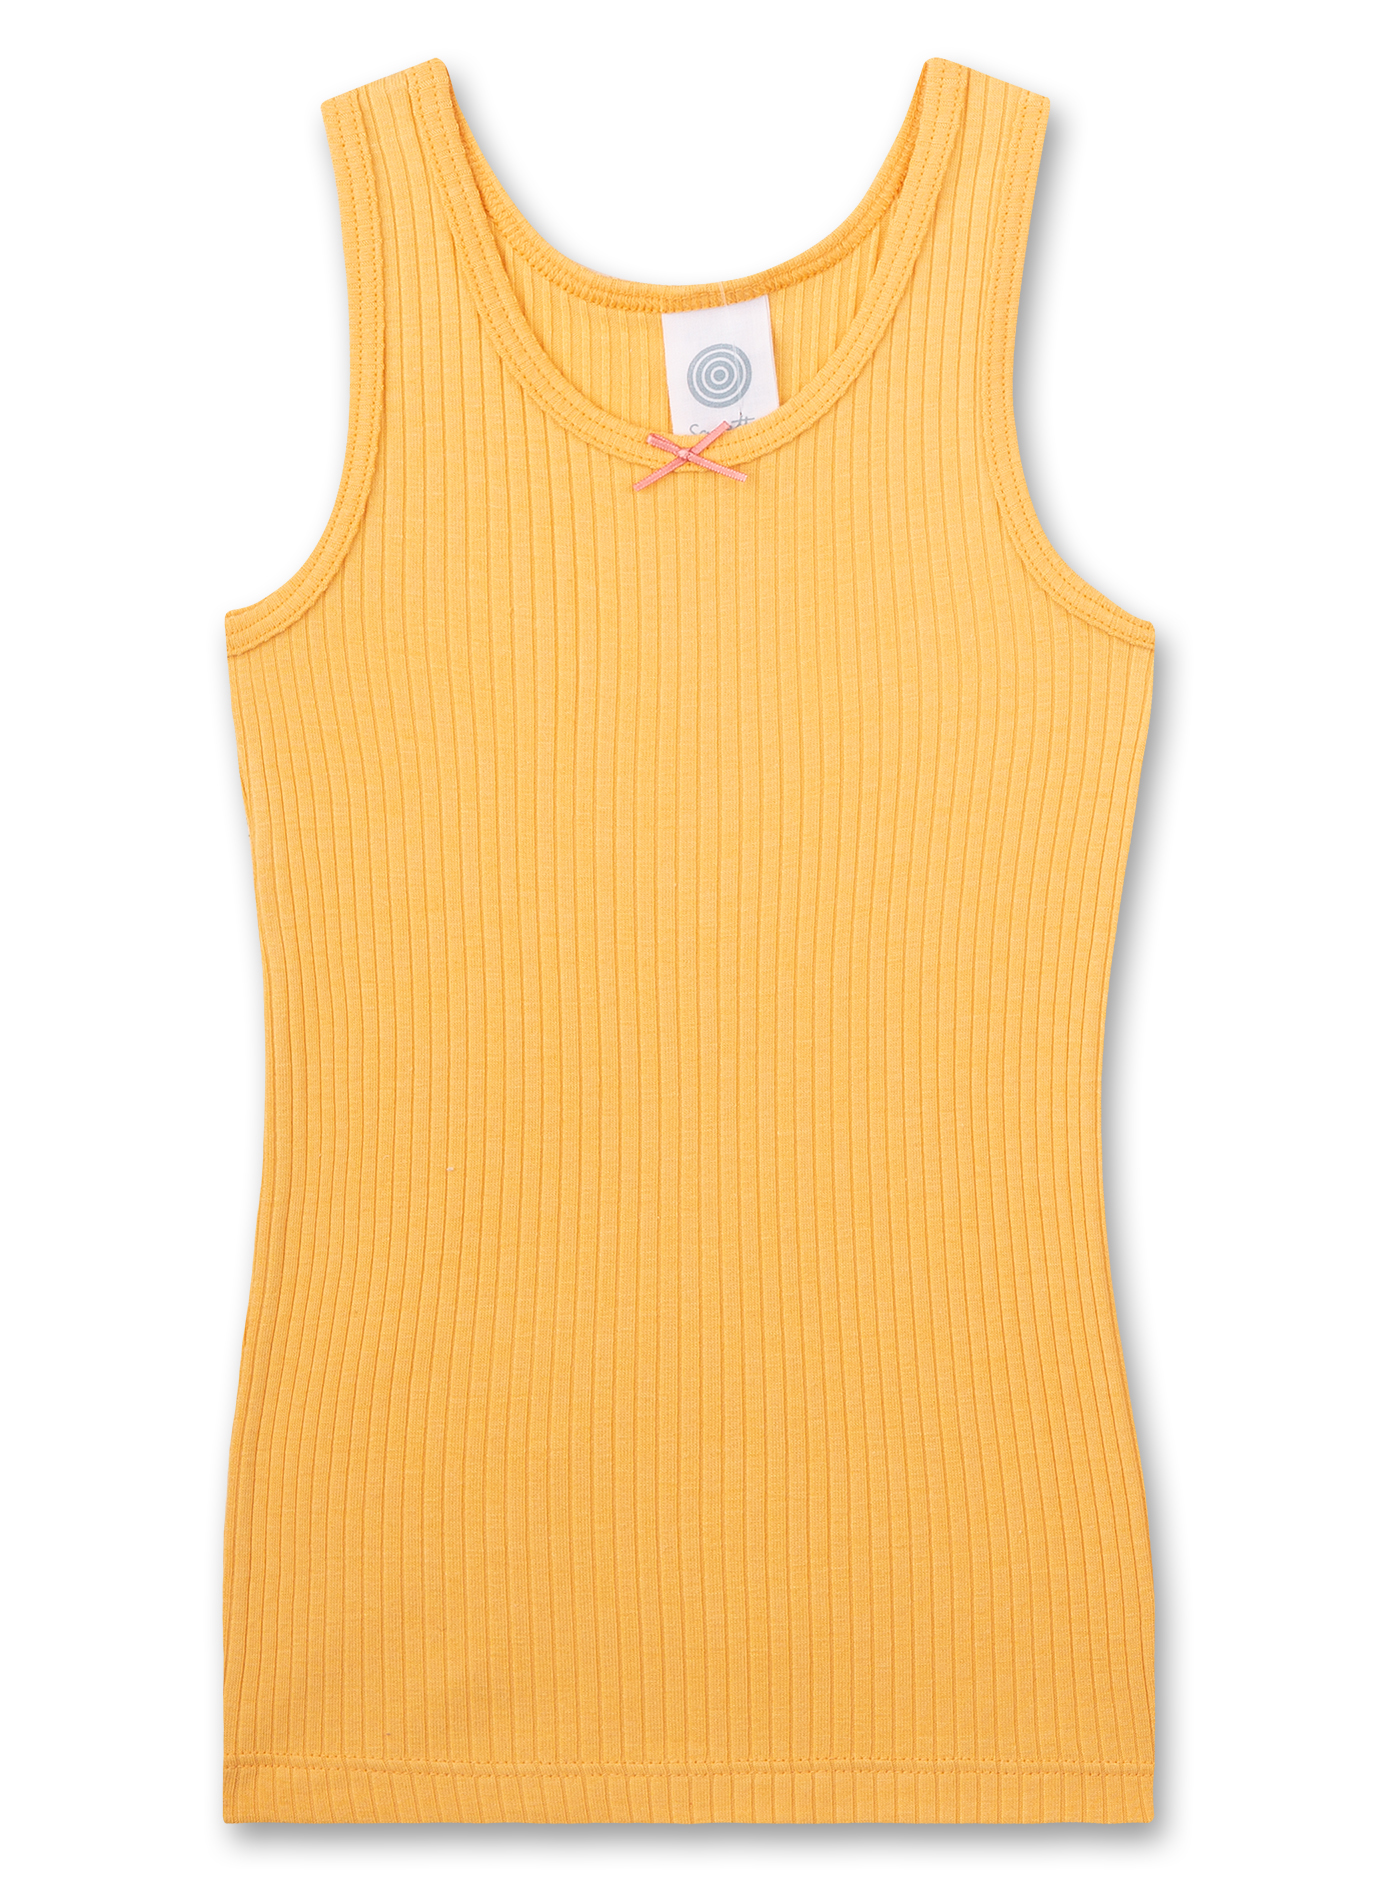 Mädchen-Unterhemd Rippe Gelb